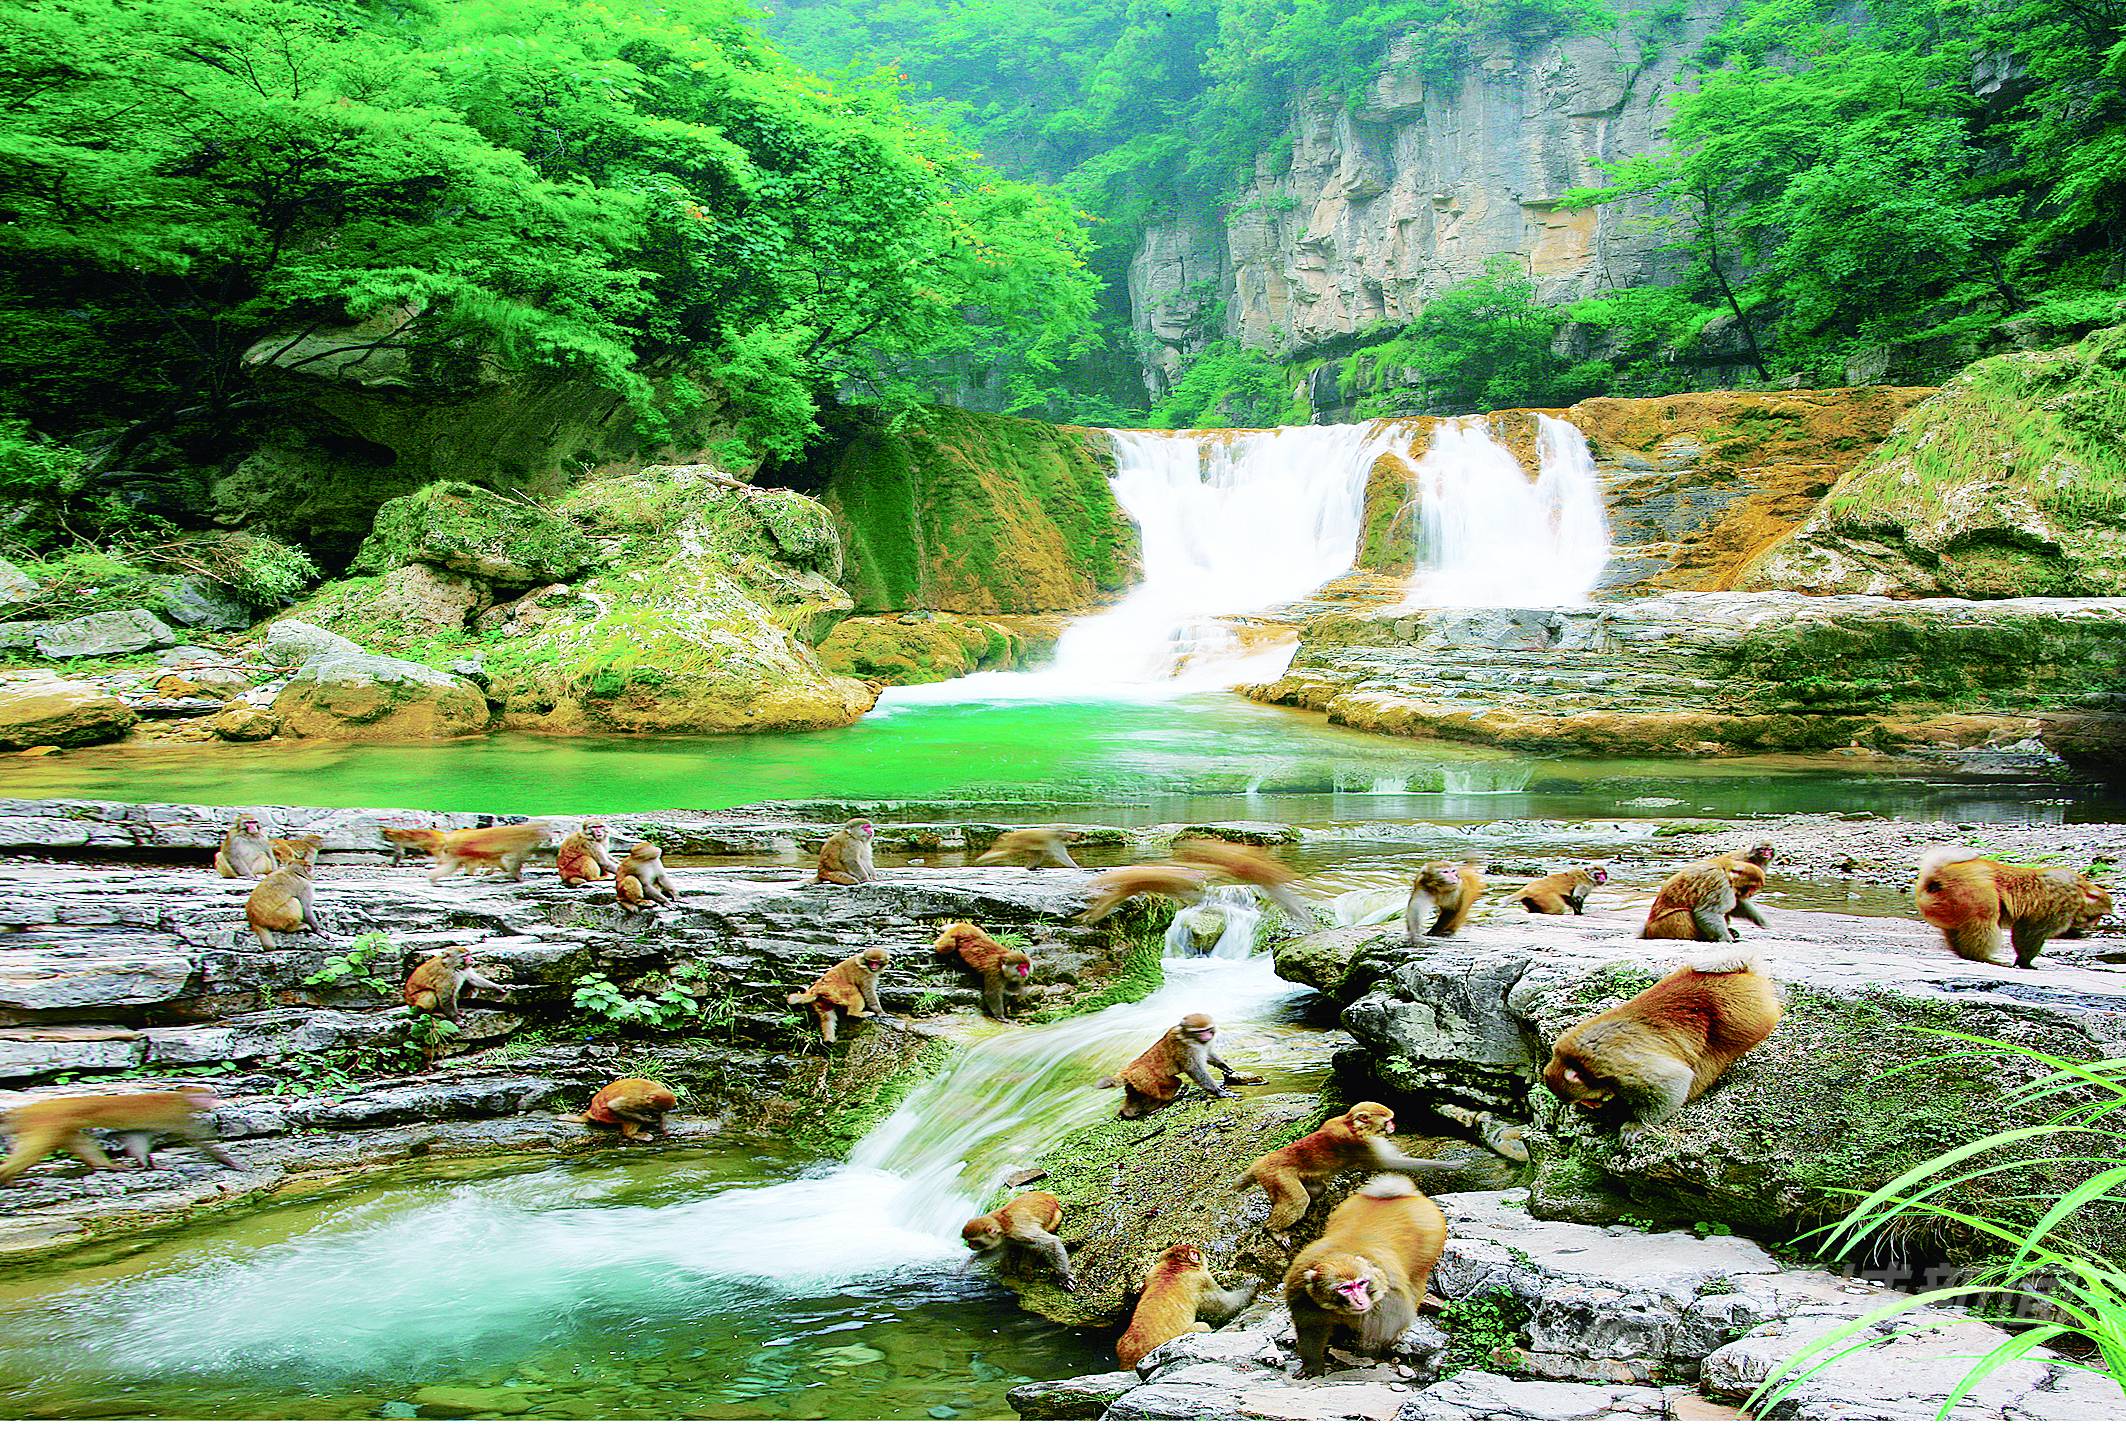 “森林之舞”炫三晋——写在2022（阳城）·首届山西森林旅游节开幕之际 - 晋城市人民政府